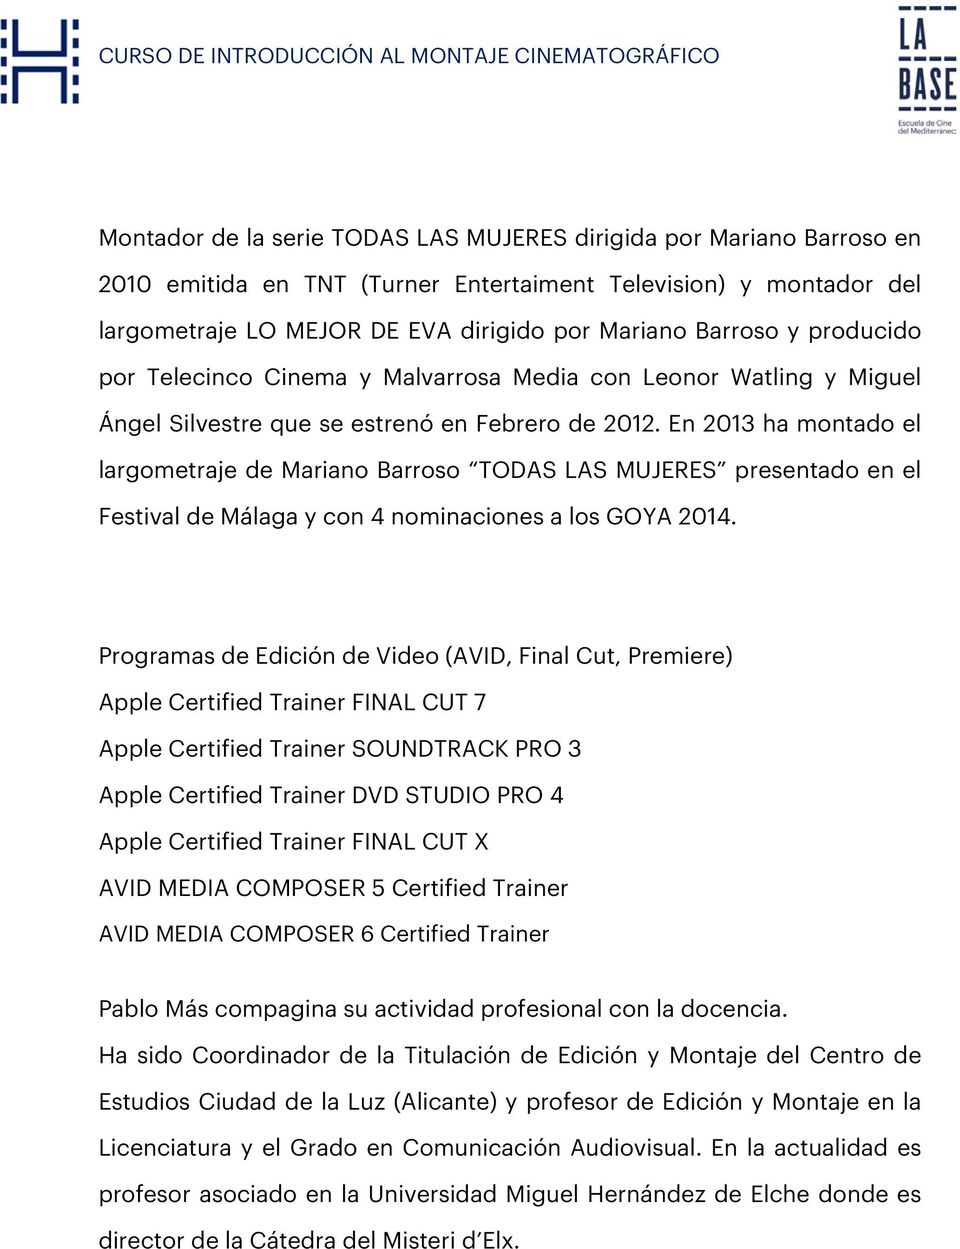 En 2013 ha montado el largometraje de Mariano Barroso TODAS LAS MUJERES presentado en el Festival de Málaga y con 4 nominaciones a los GOYA 2014.